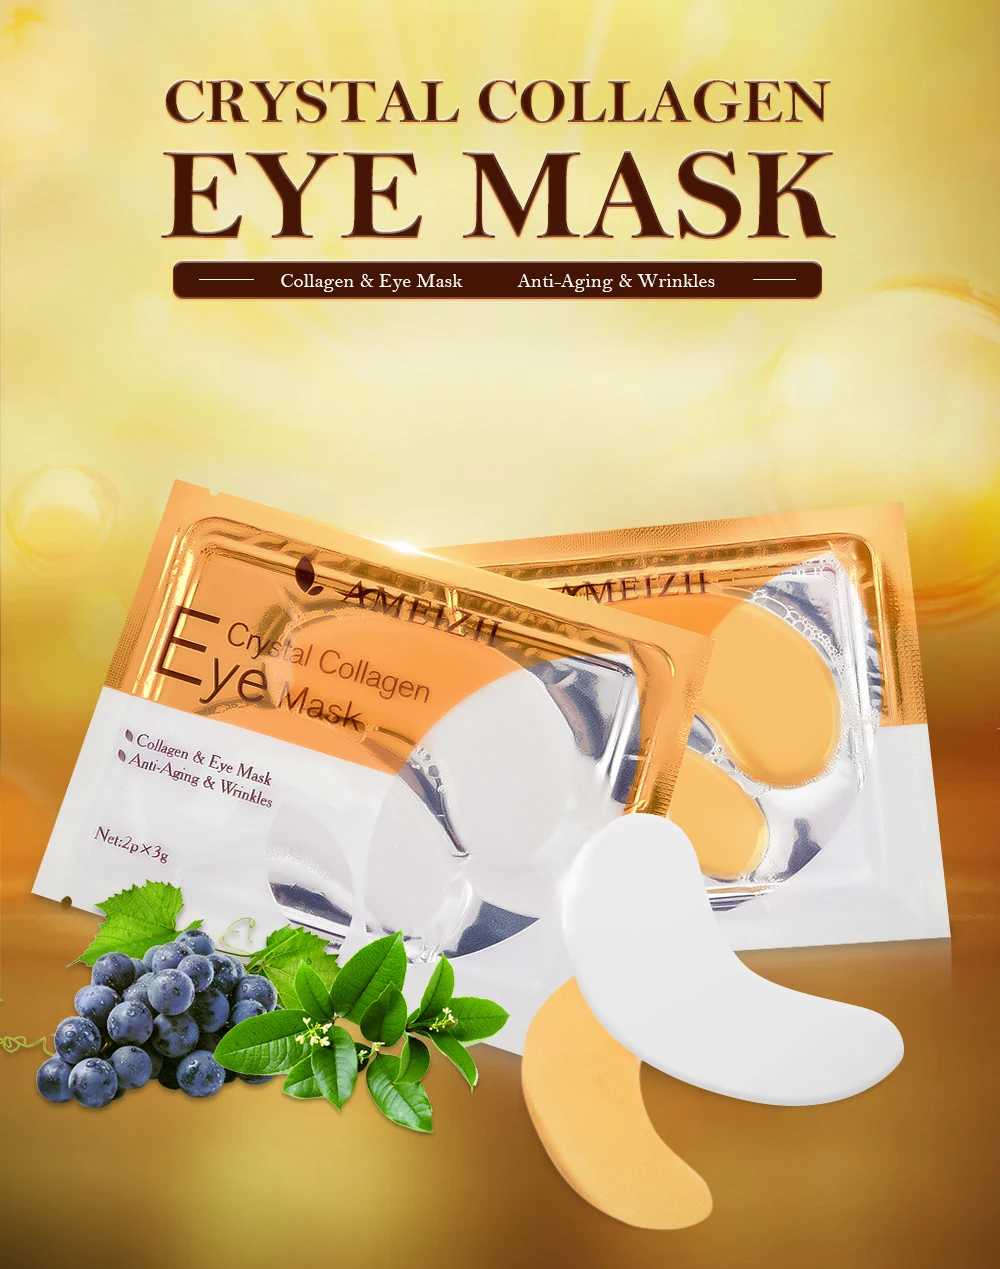 Ameizii 10 шт. 5 упаковок 24 к золотистый гель маски для глаз коллаген для ухода за кожей патчи для глаз подушечки против морщин Удаление темных кругов лечение глаз